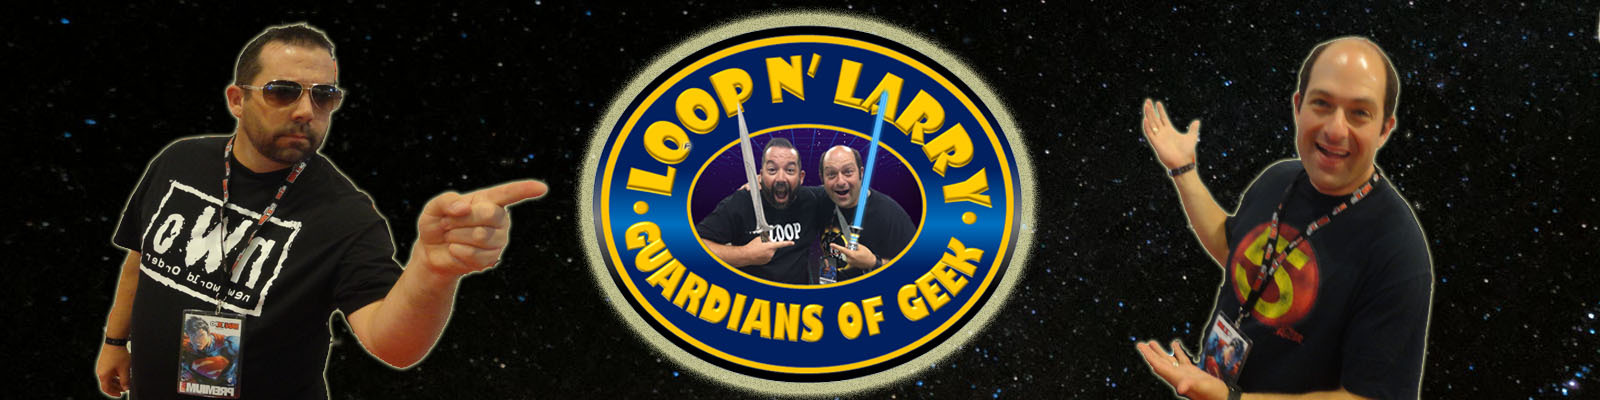 Loop N’ Larry: Guardians Of Geek